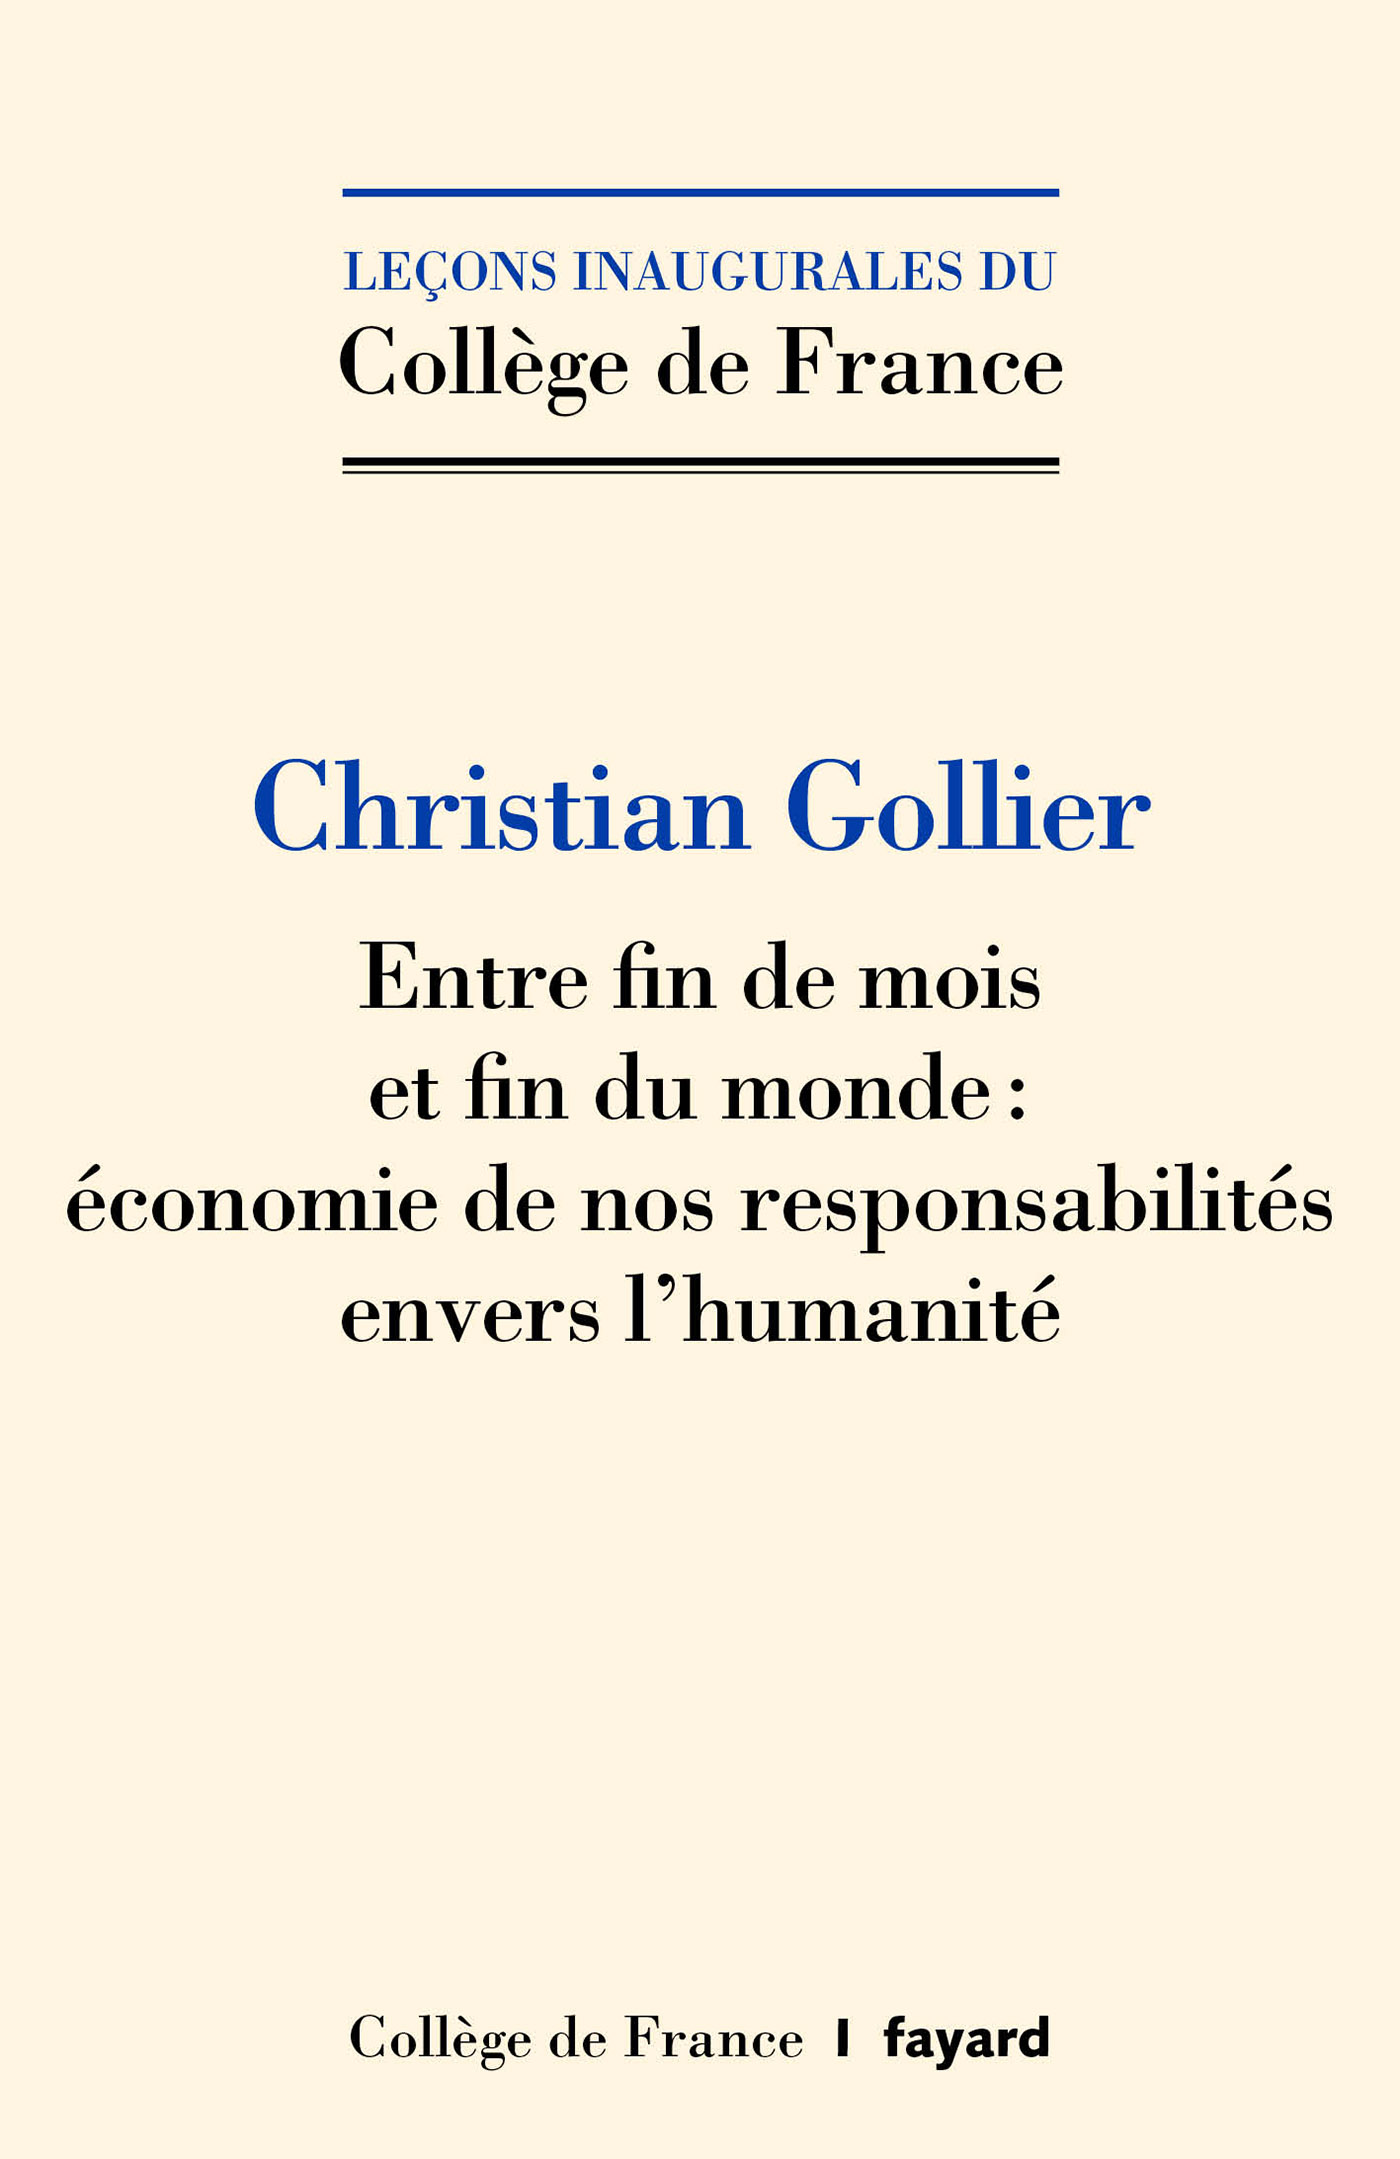 Couverture de l'édition imprimée de la leçon inaugurale de Christian Gollier